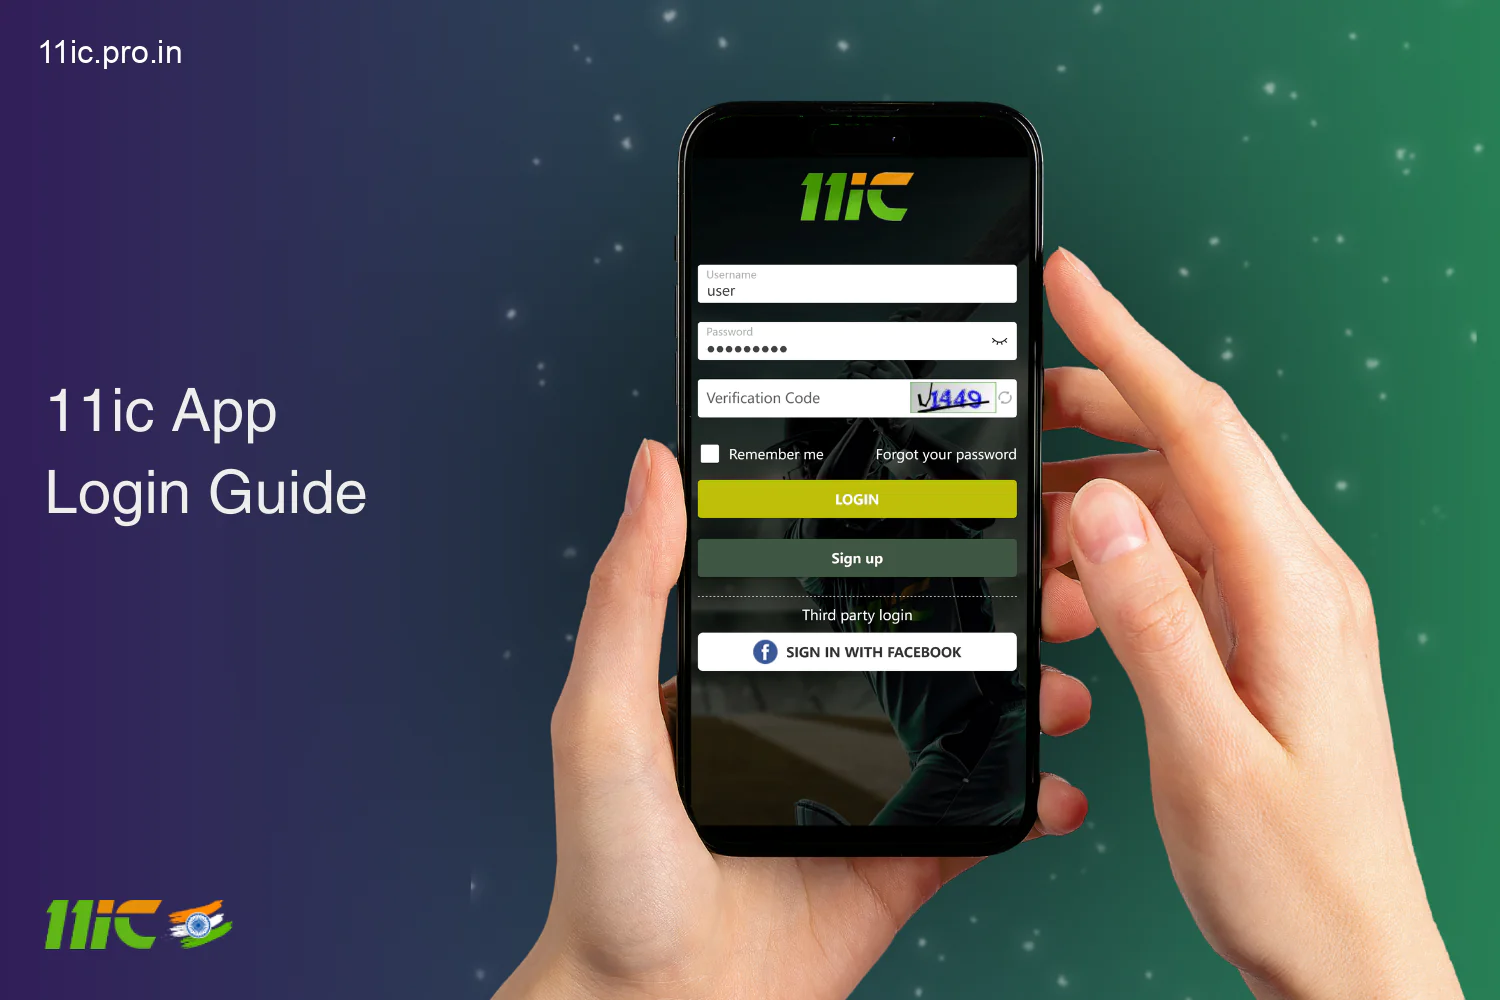 भारत में 11ic ऐप में प्रवेश करने के लिए एंटर पर क्लिक करें, विवरण दर्ज करें, पुष्टि करें - जल्दी और आसानी से खेलना शुरू करें